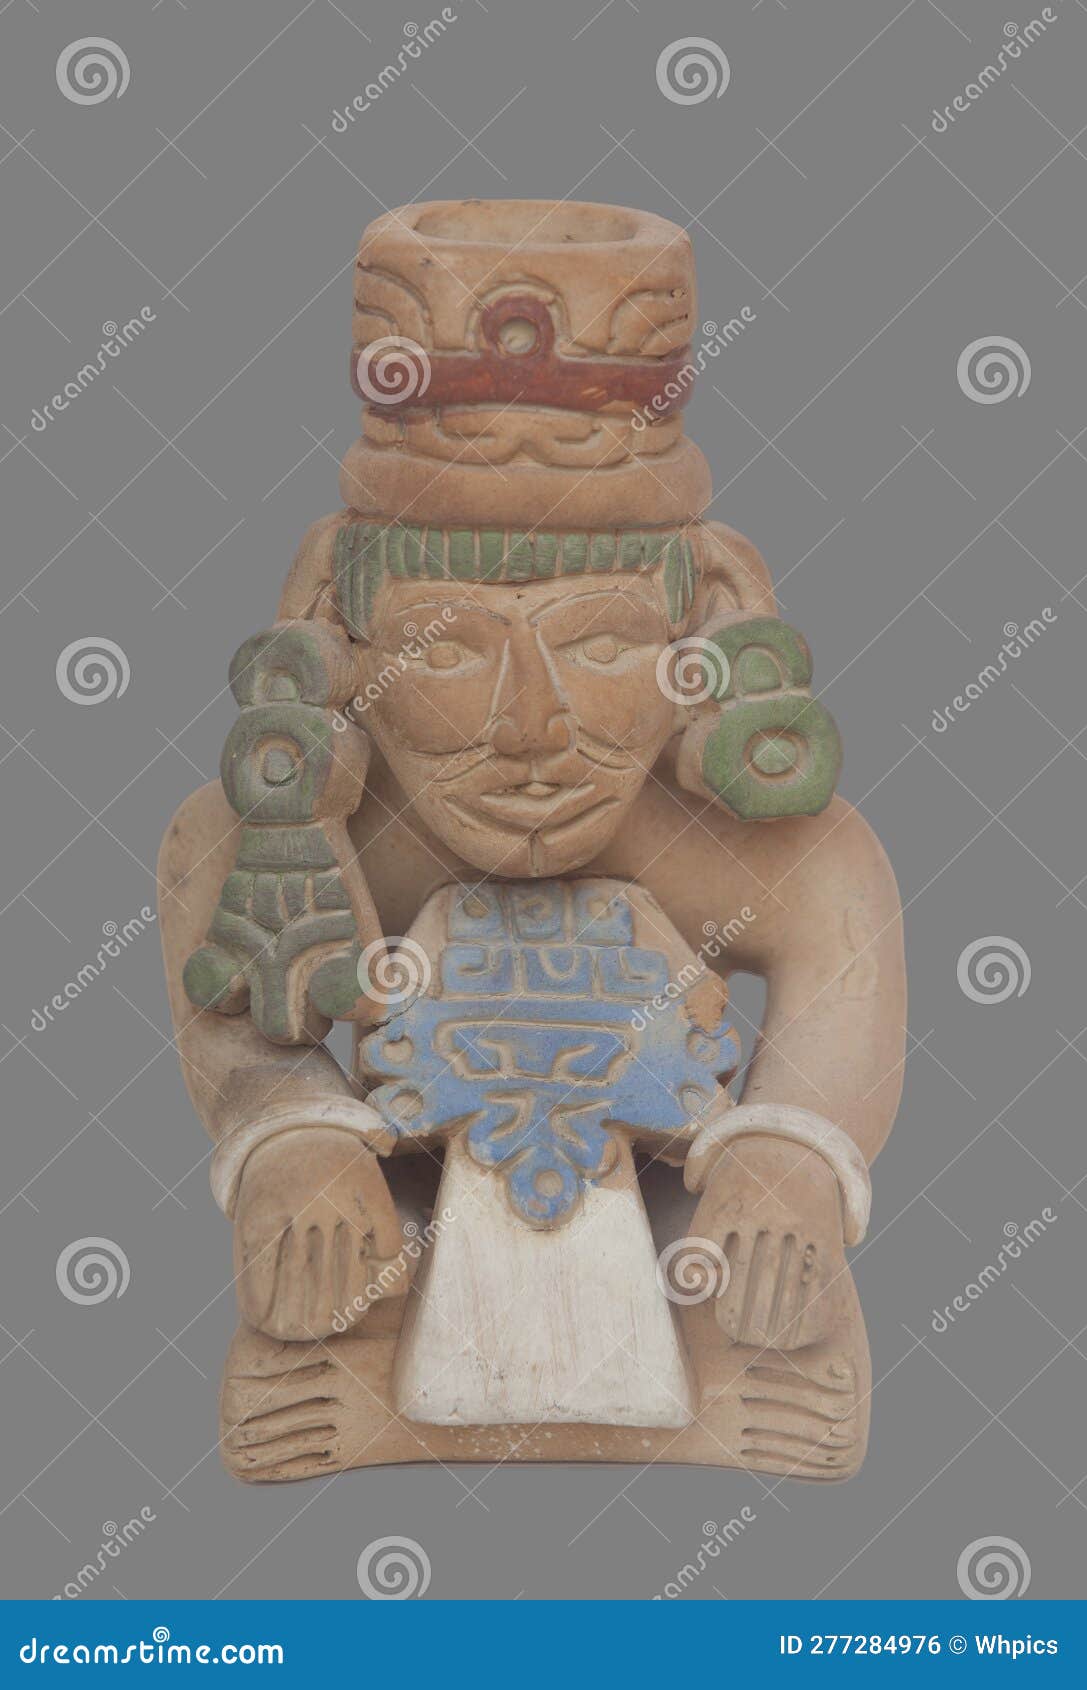 mayans civilization souvenir, terracotta replicas